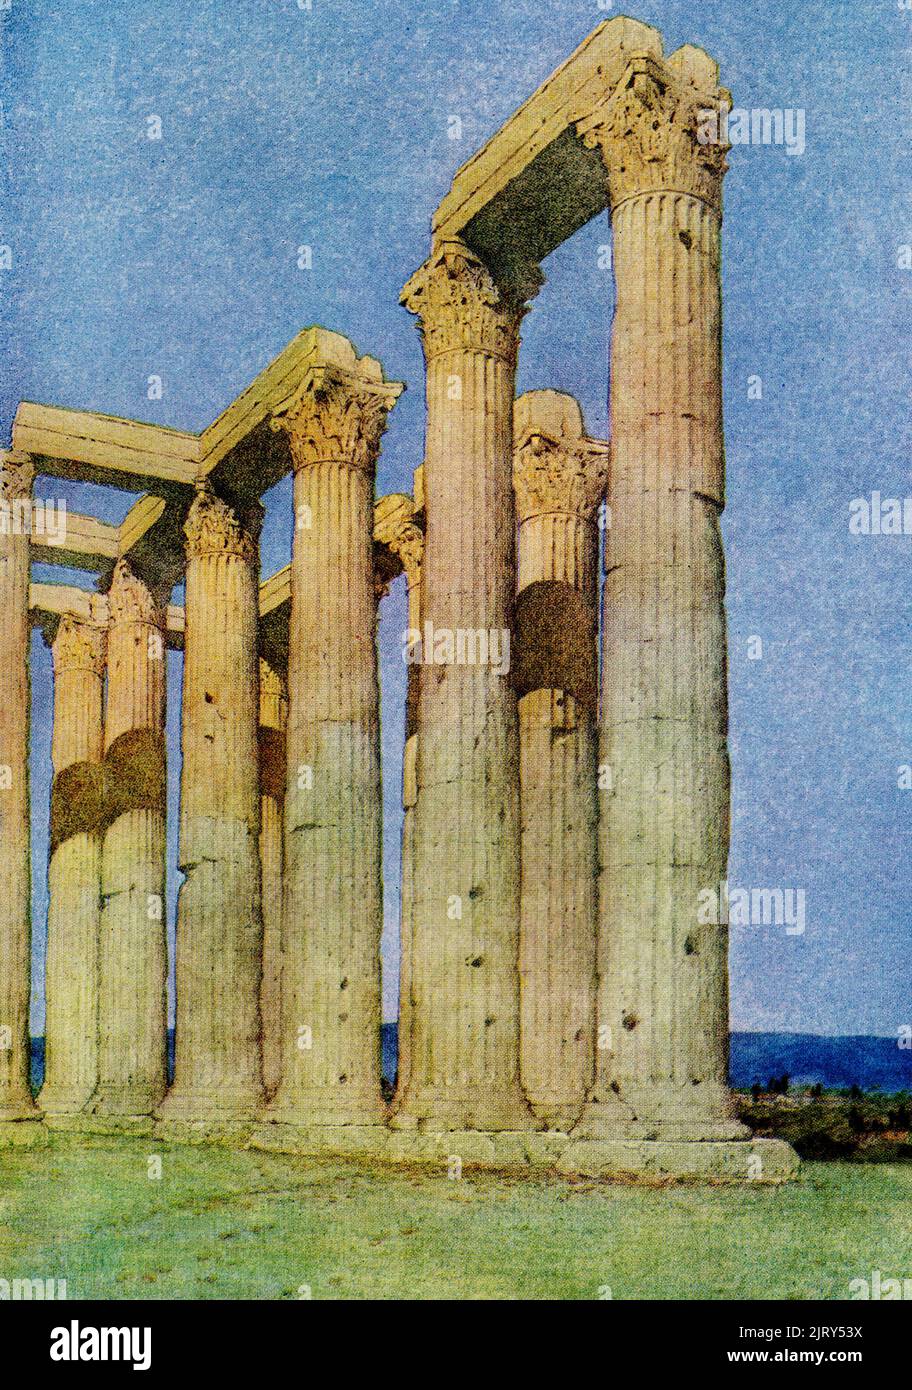 Diese Abbildung aus dem Jahr 1910 zeigt den Tempel des olympischen Zeus in Athen, der von Jules Guerin gemalt wurde. Der olympische Zeus, auch als Olympieion oder die Säulen des olympischen Zeus bekannt, ist ein ehemaliger kolossaler Tempel im Zentrum der griechischen Hauptstadt Athen. Es war dem 'olympischen' Zeus gewidmet, ein Name, der von seiner Position als Kopf der olympischen Götter herrührend war. Der Bau begann im 6.. Jahrhundert v. Chr., wurde aber erst unter der Herrschaft des römischen Imperators Hadrian im 2.. Jahrhundert n. Chr. fertiggestellt. Jules Guérin 1866–1946) war ein amerikanischer Muralist, Architekturmaler und Illustrator. Ein Maler und Wid Stockfoto